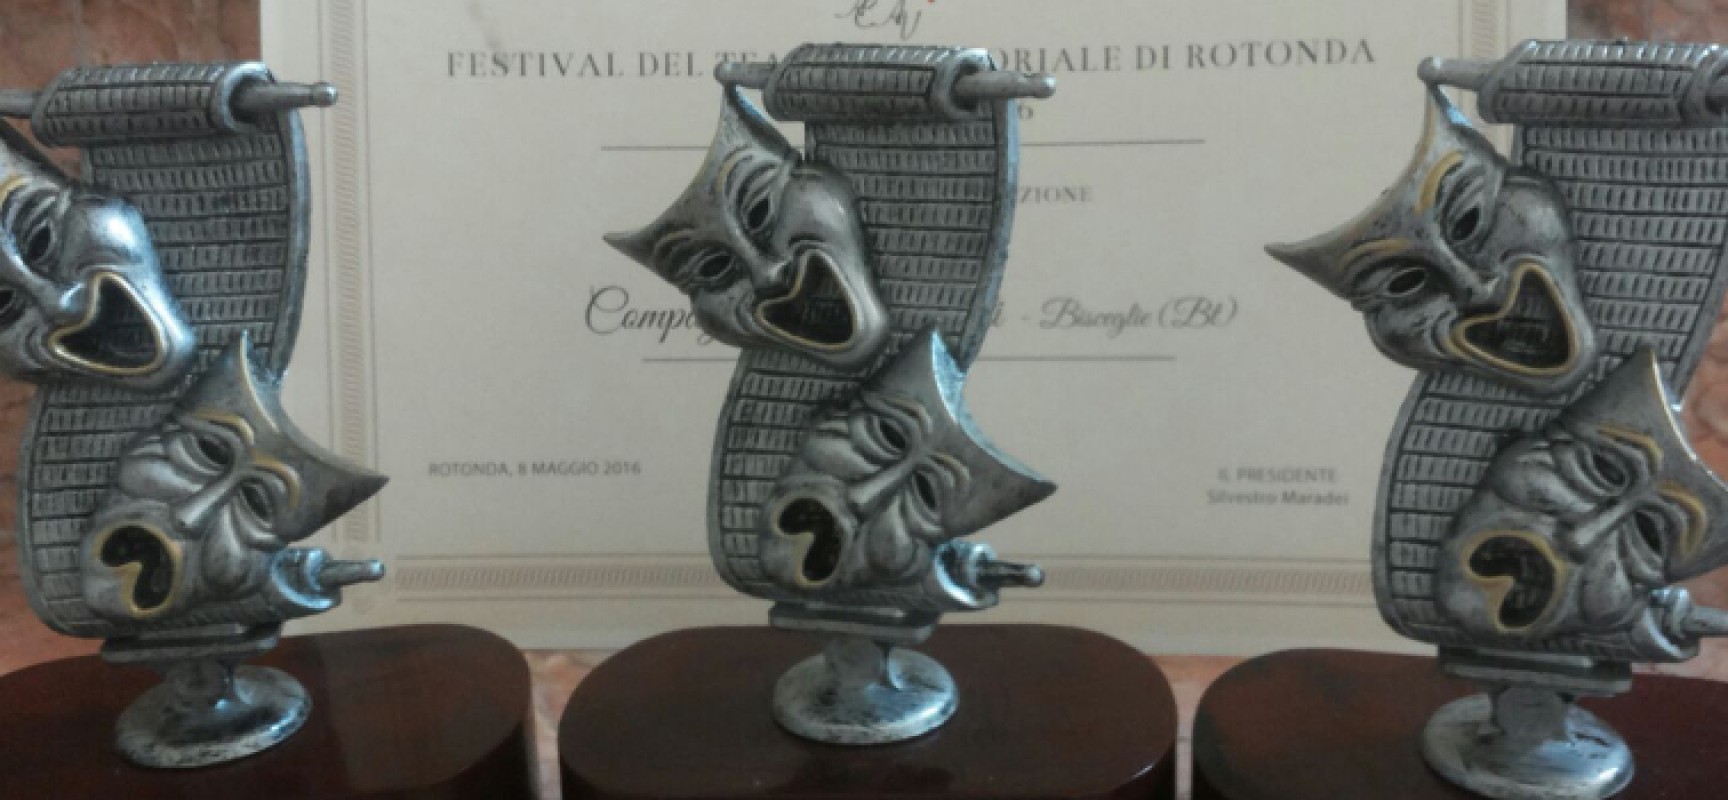 Tris di premi e valanga di nomination per la Compagnia dei Teatranti in Basilicata